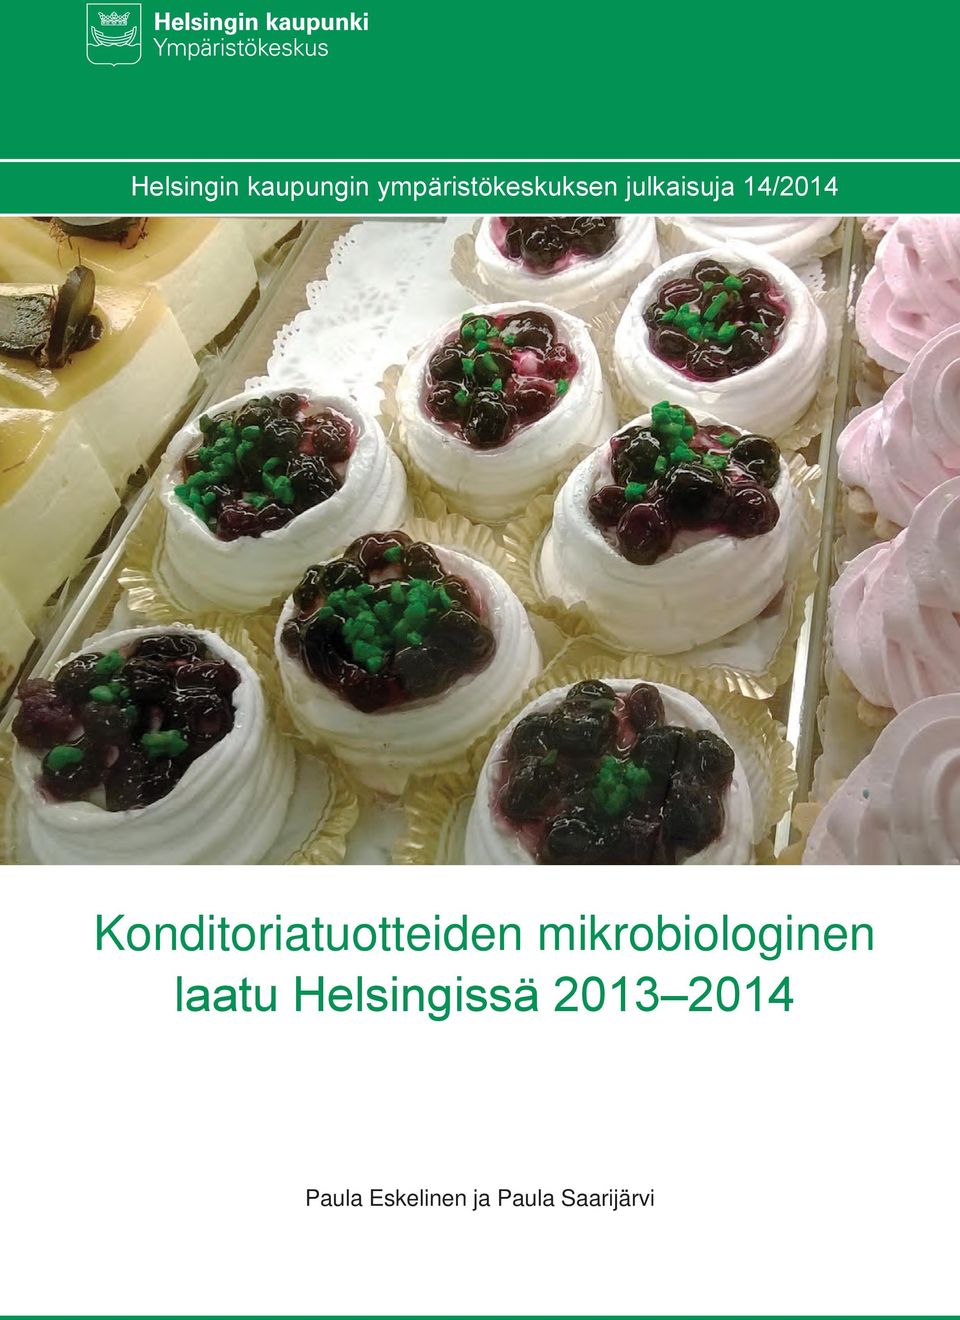 mikrobiologinen laatu Helsingissä 2013